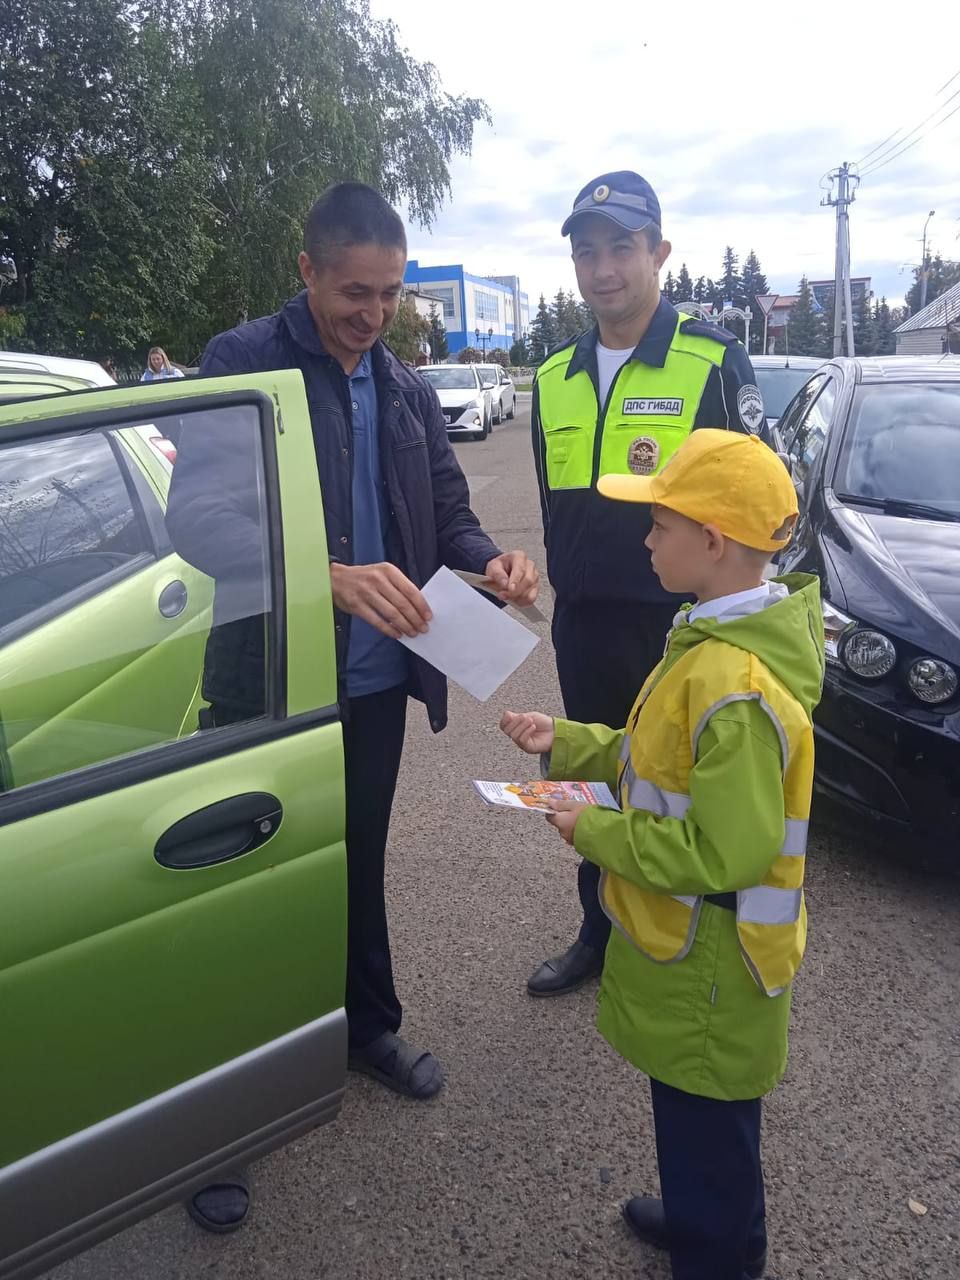 Дети раздавали памятки «Детское автокресло - гарантия безопасности» водителям.